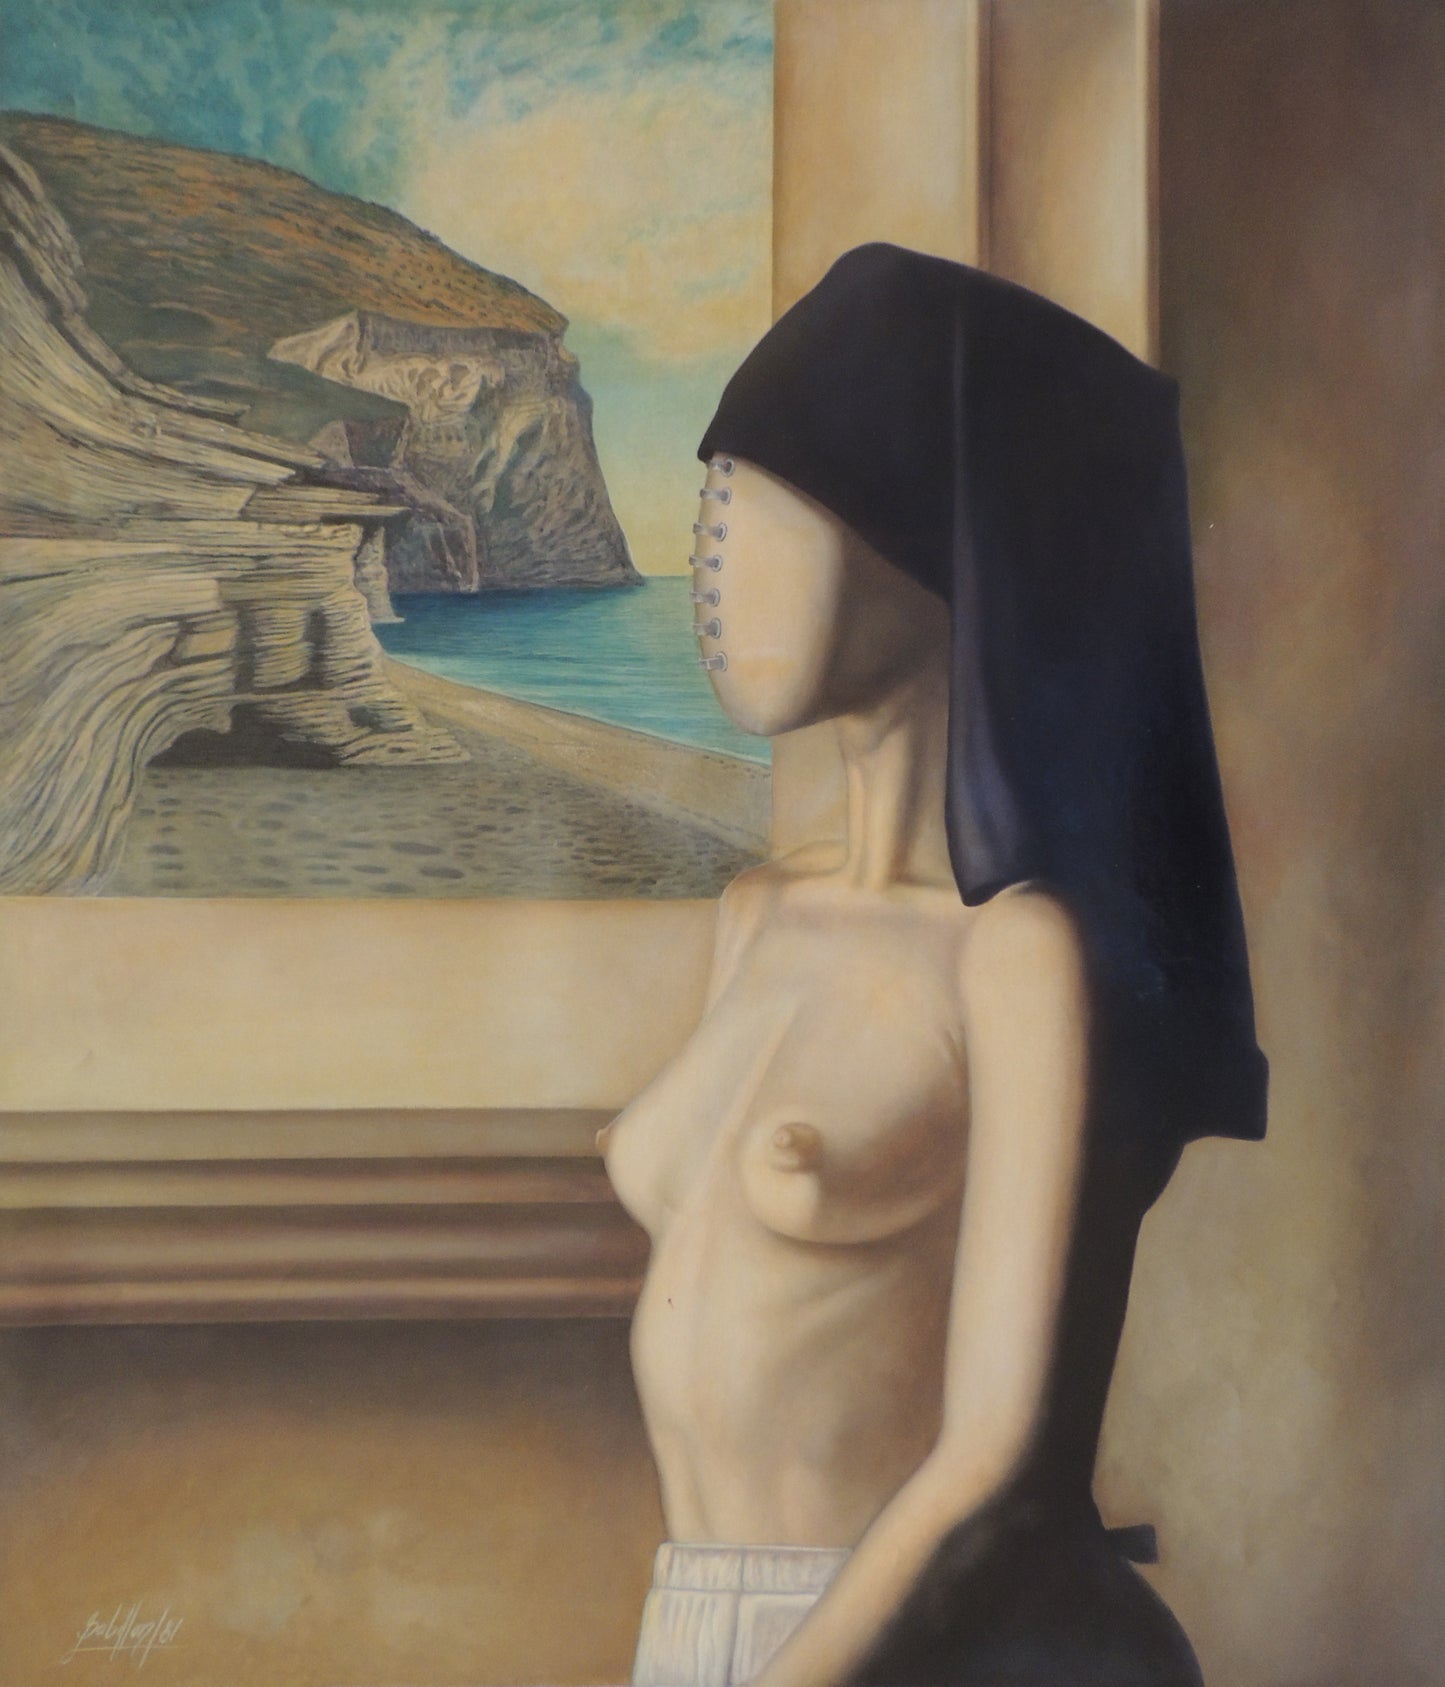 Gregorio Sabillon retrato monja desnuda Gaudifond